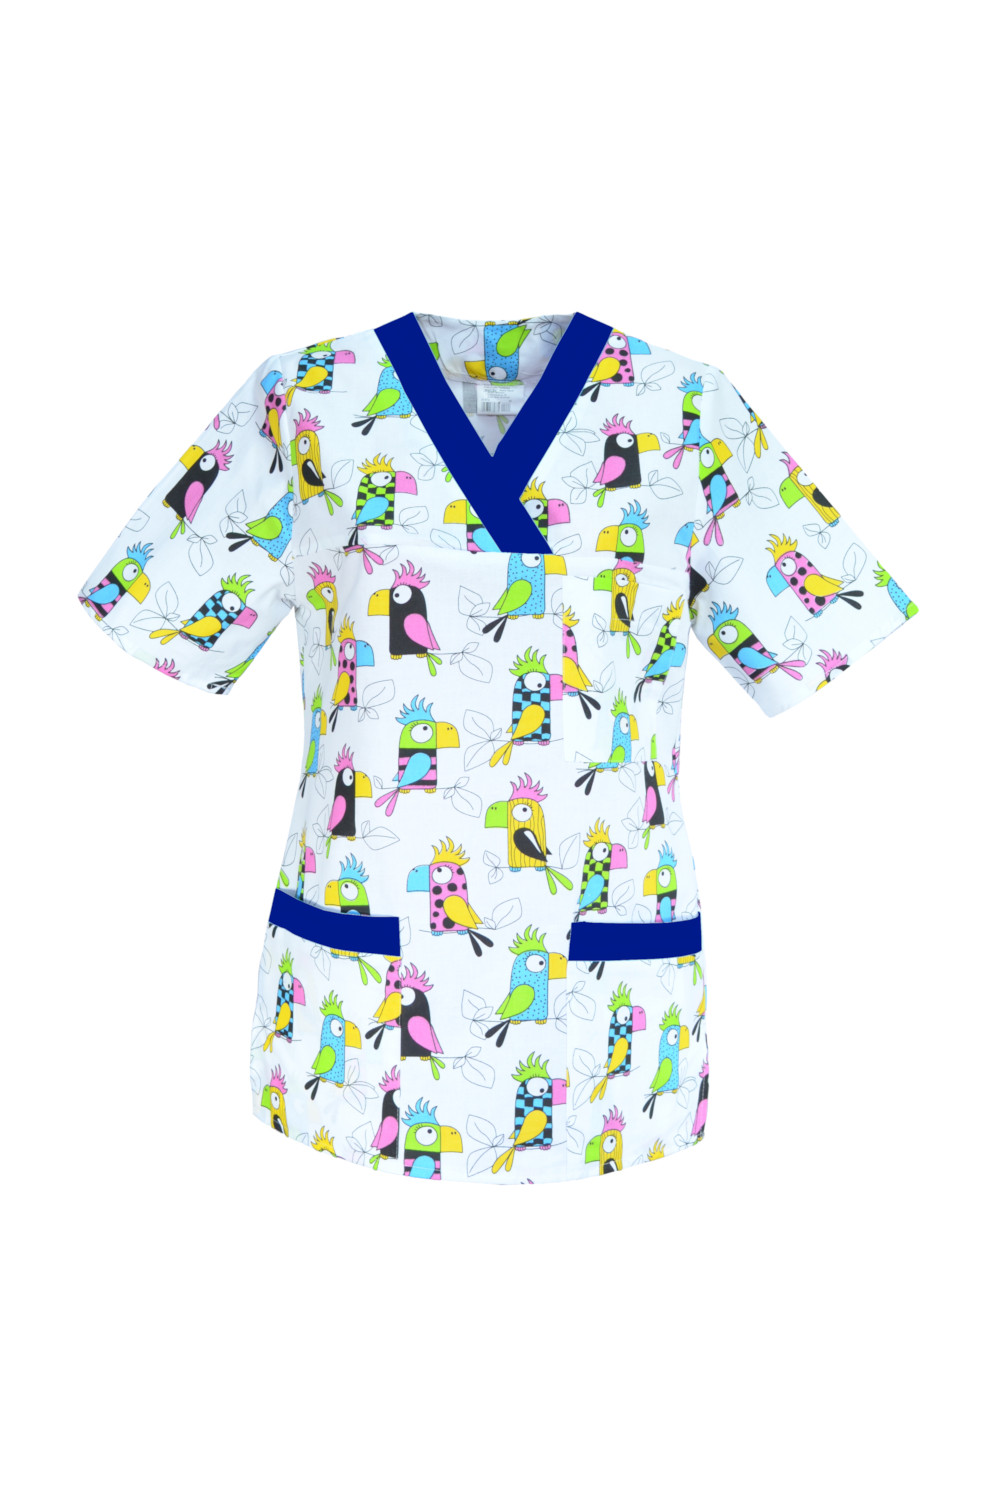 M-074G bluza medyczna damska we wzorki, kolorowa. Wzór papugi z szafirem